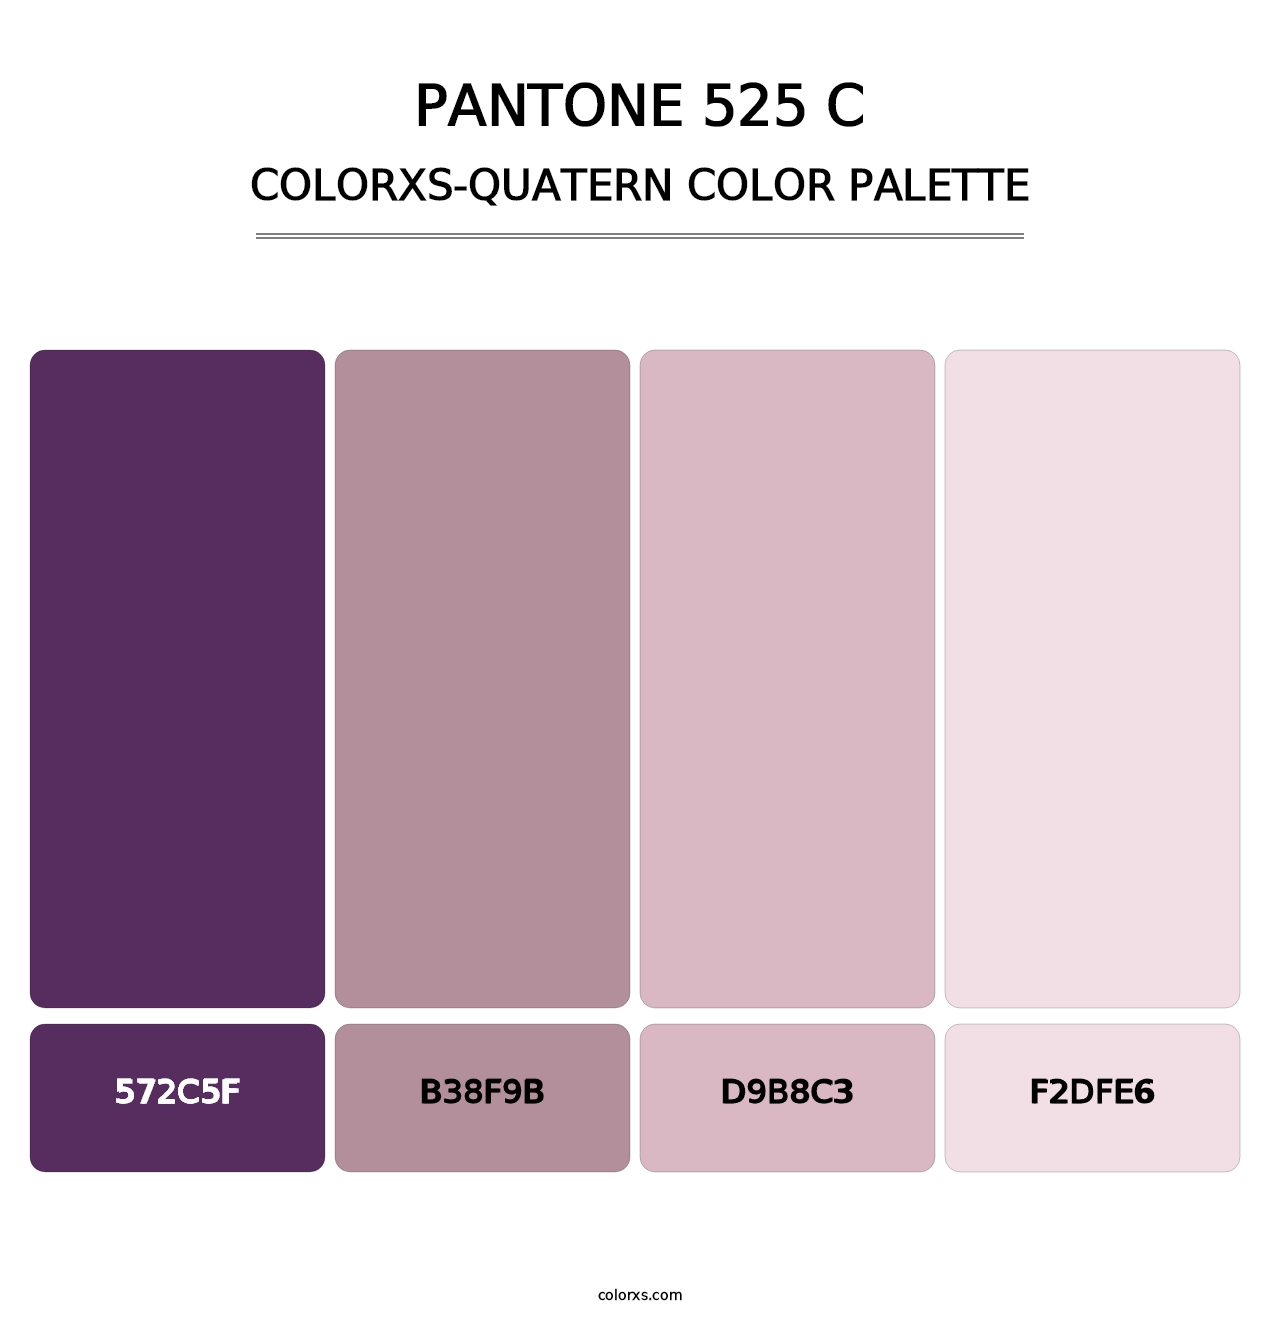 PANTONE 525 C - Colorxs Quatern Palette